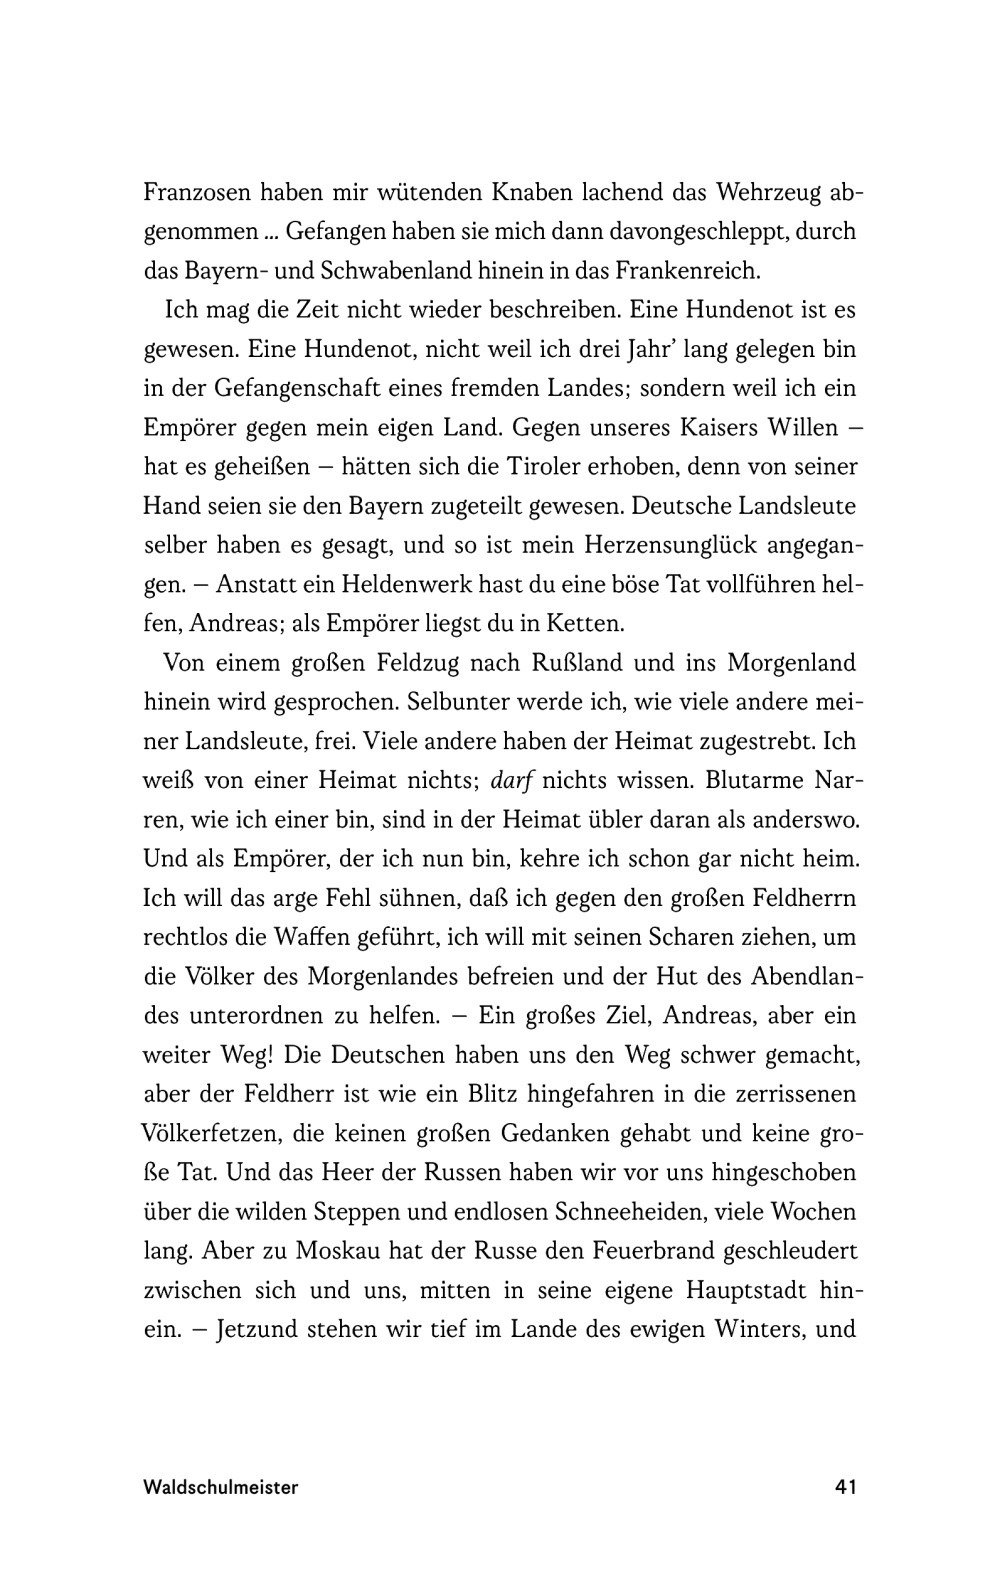 9783222135989 - Die Schriften des Waldschulmeisters